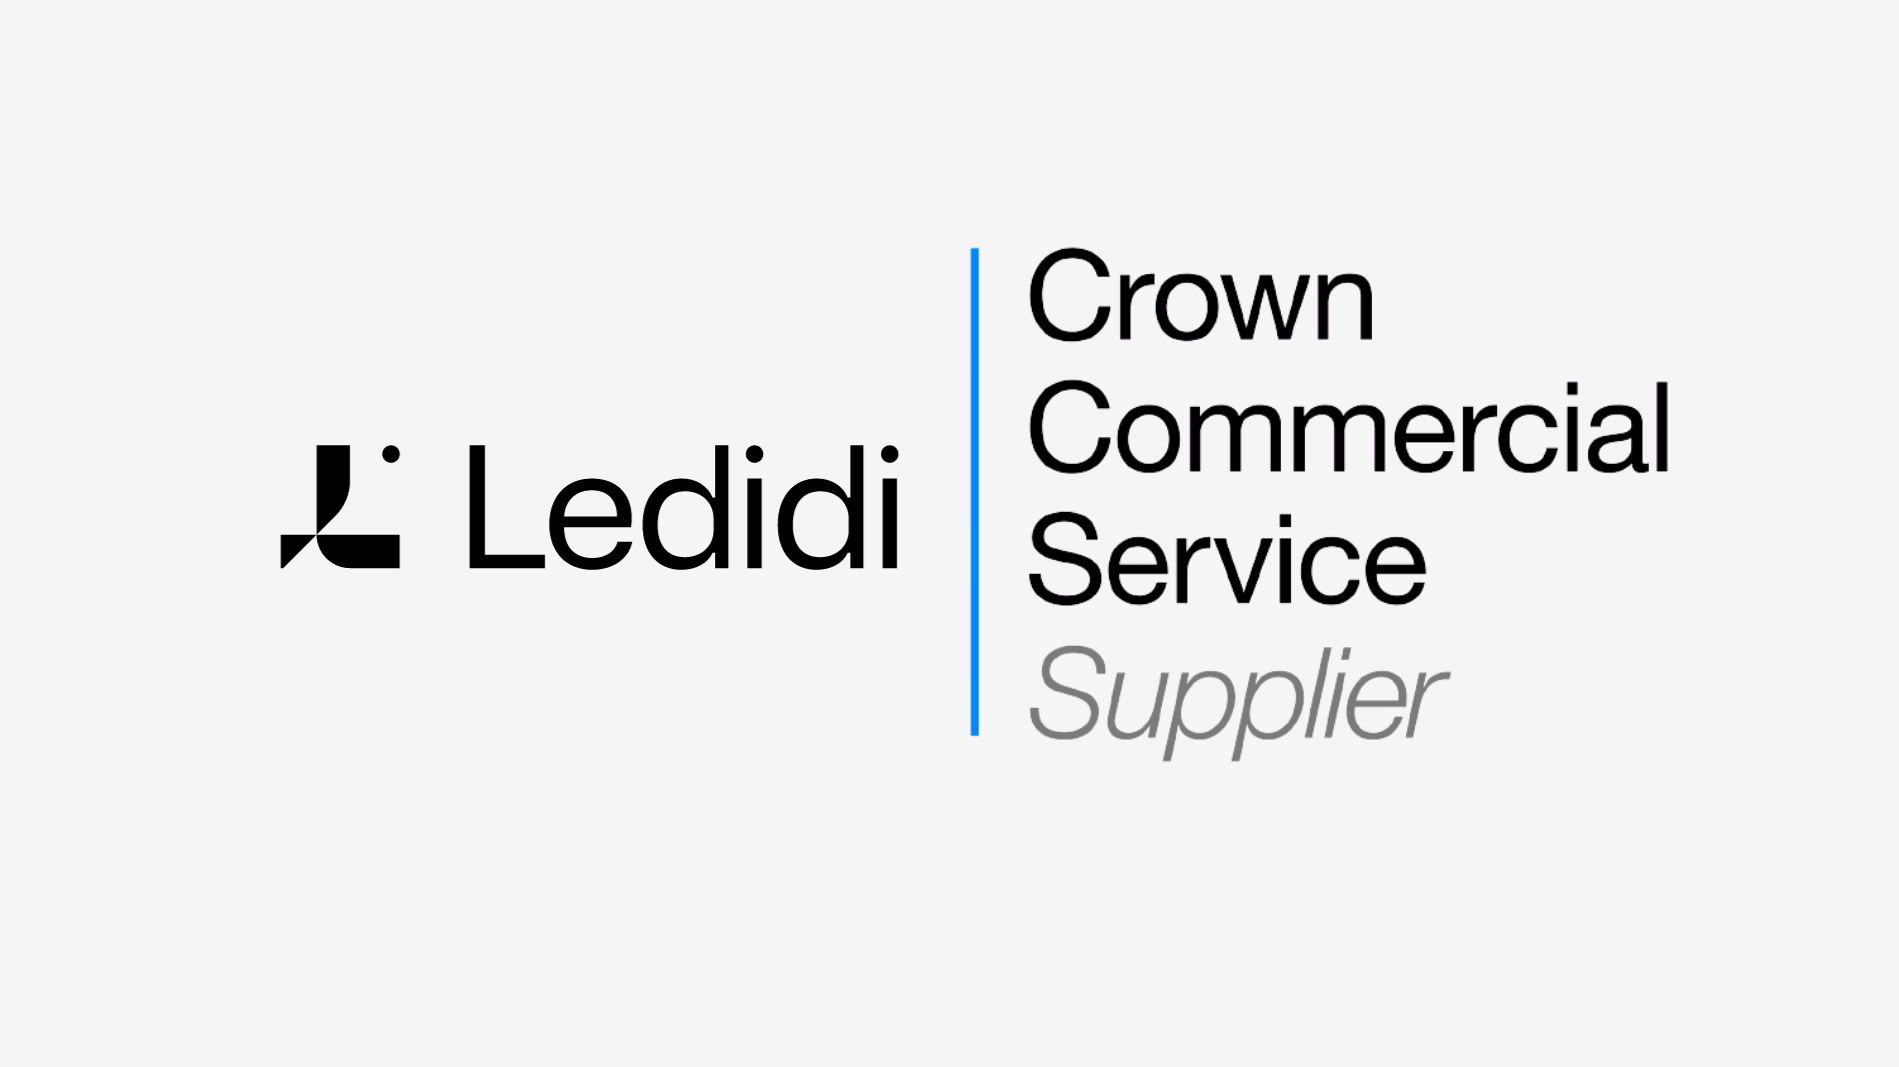 Kopi av Ledidi Core Crown Commercial Service Supplier